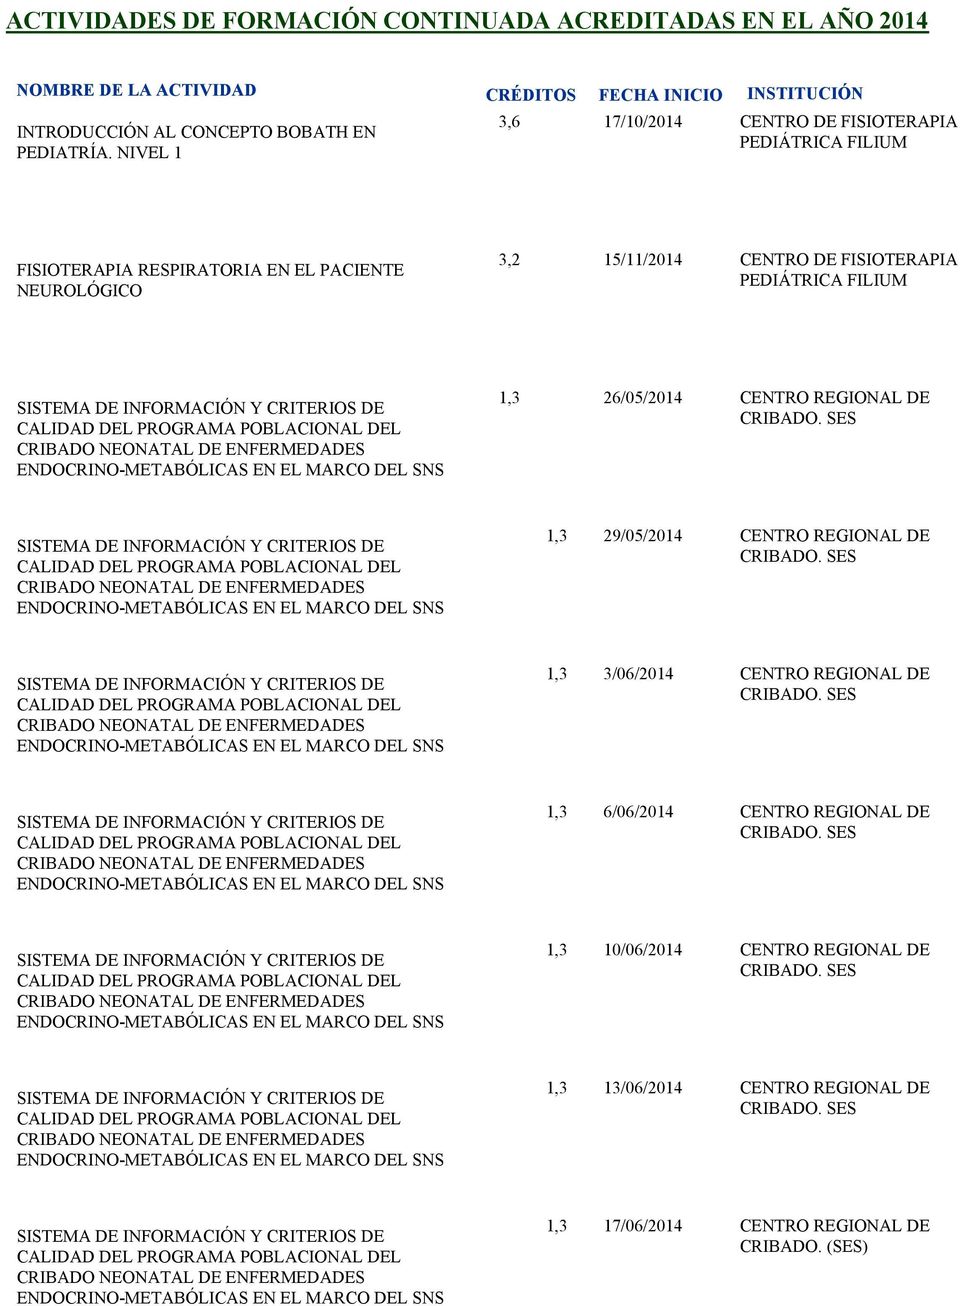 CRITERIOS DE CALIDAD DEL PROGRAMA POBLACIONAL DEL CRIBADO NEONATAL DE ENFERMEDADES ENDOCRINO-METABÓLICAS EN EL MARCO DEL SNS 1,3 26/05/2014 CENTRO REGIONAL DE CRIBADO.